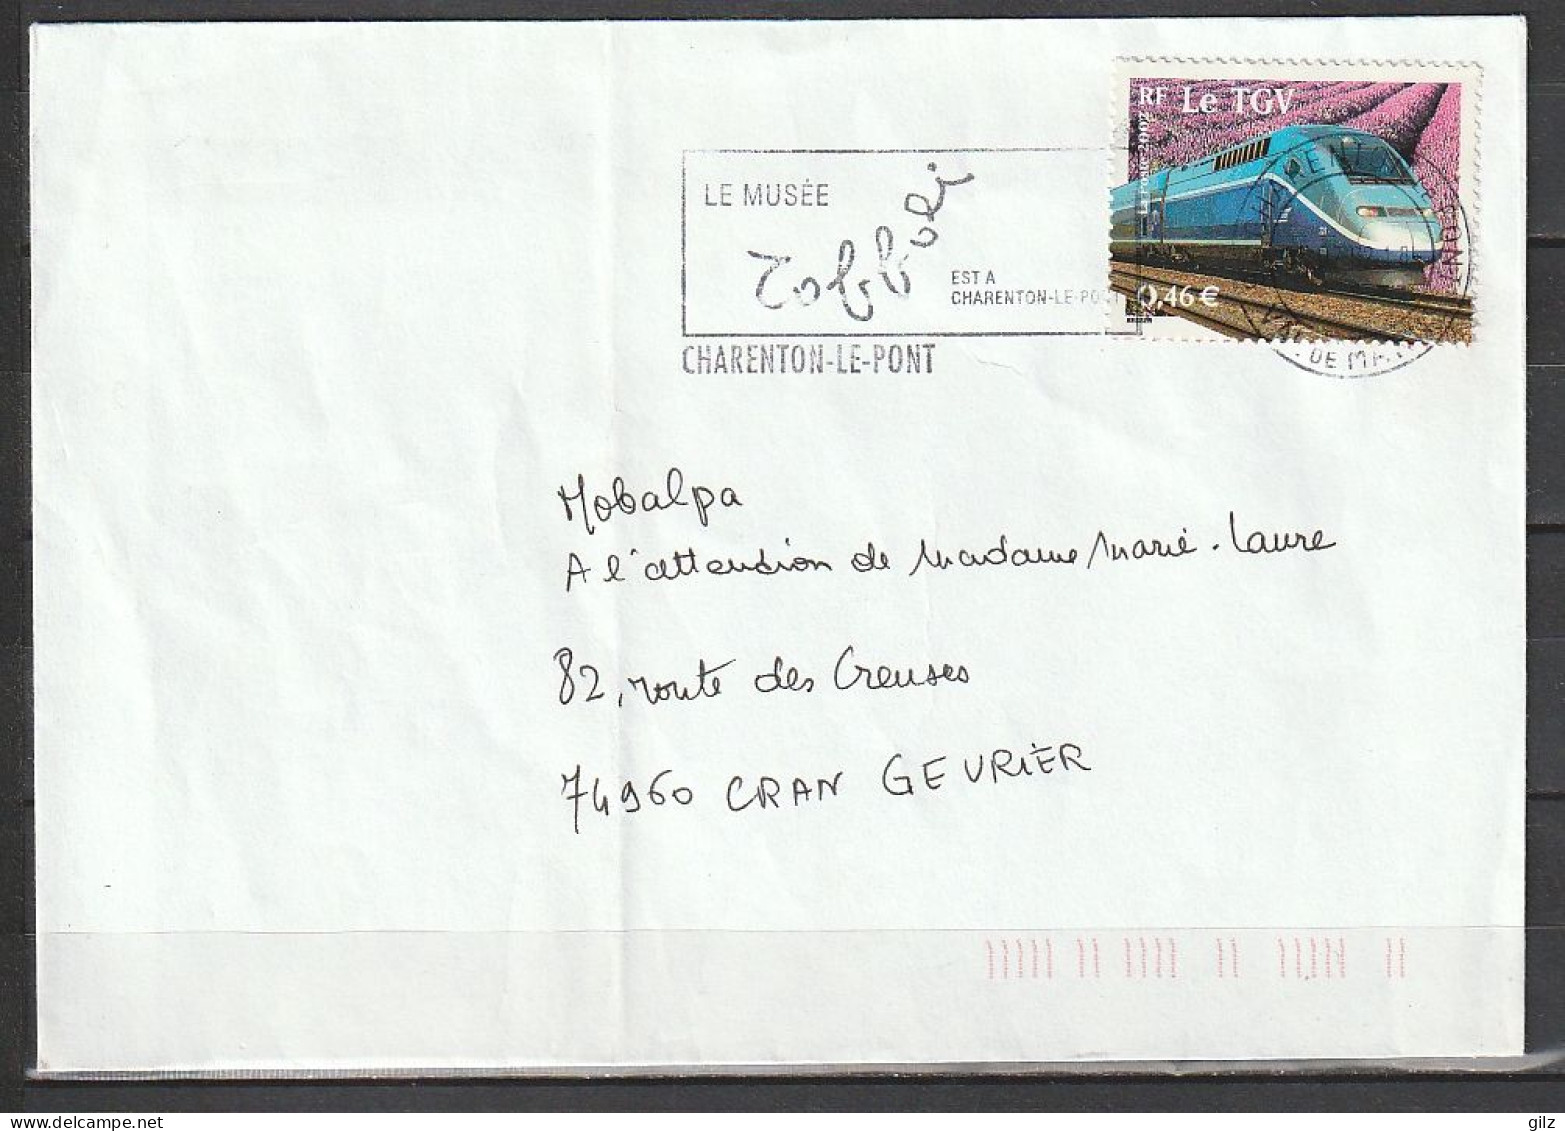 Lettre Charenton Le Pont (Val De Marne)Cran Gevrier (H.Savoie) Du 05/07/2002 Tp Yv:3475 - Lettres & Documents